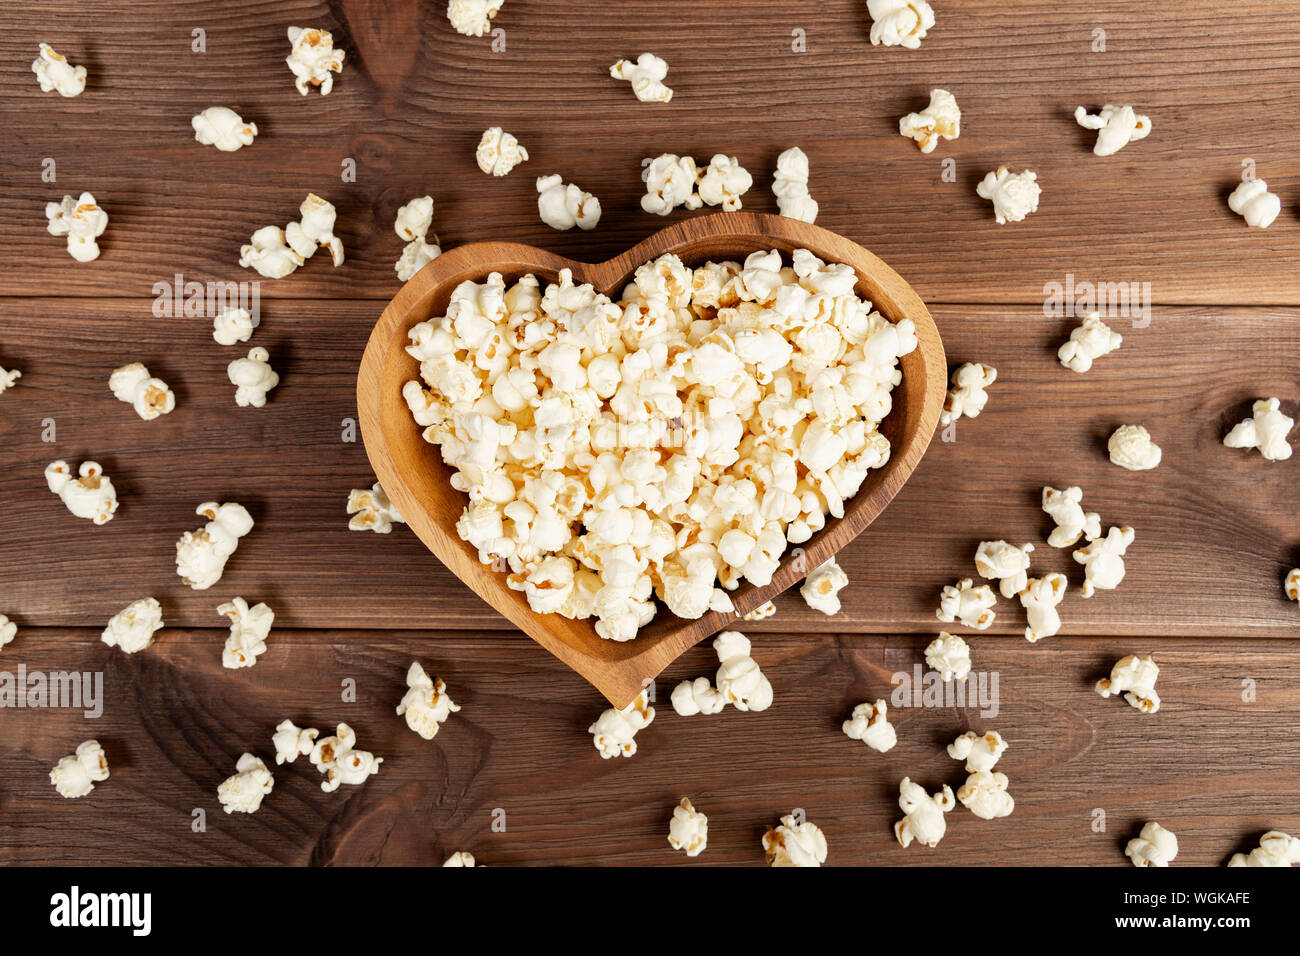 Popcorn dans une plaque en bois brun en forme de cœur sur une table en bois. Popcorn est disposé sur la table Banque D'Images